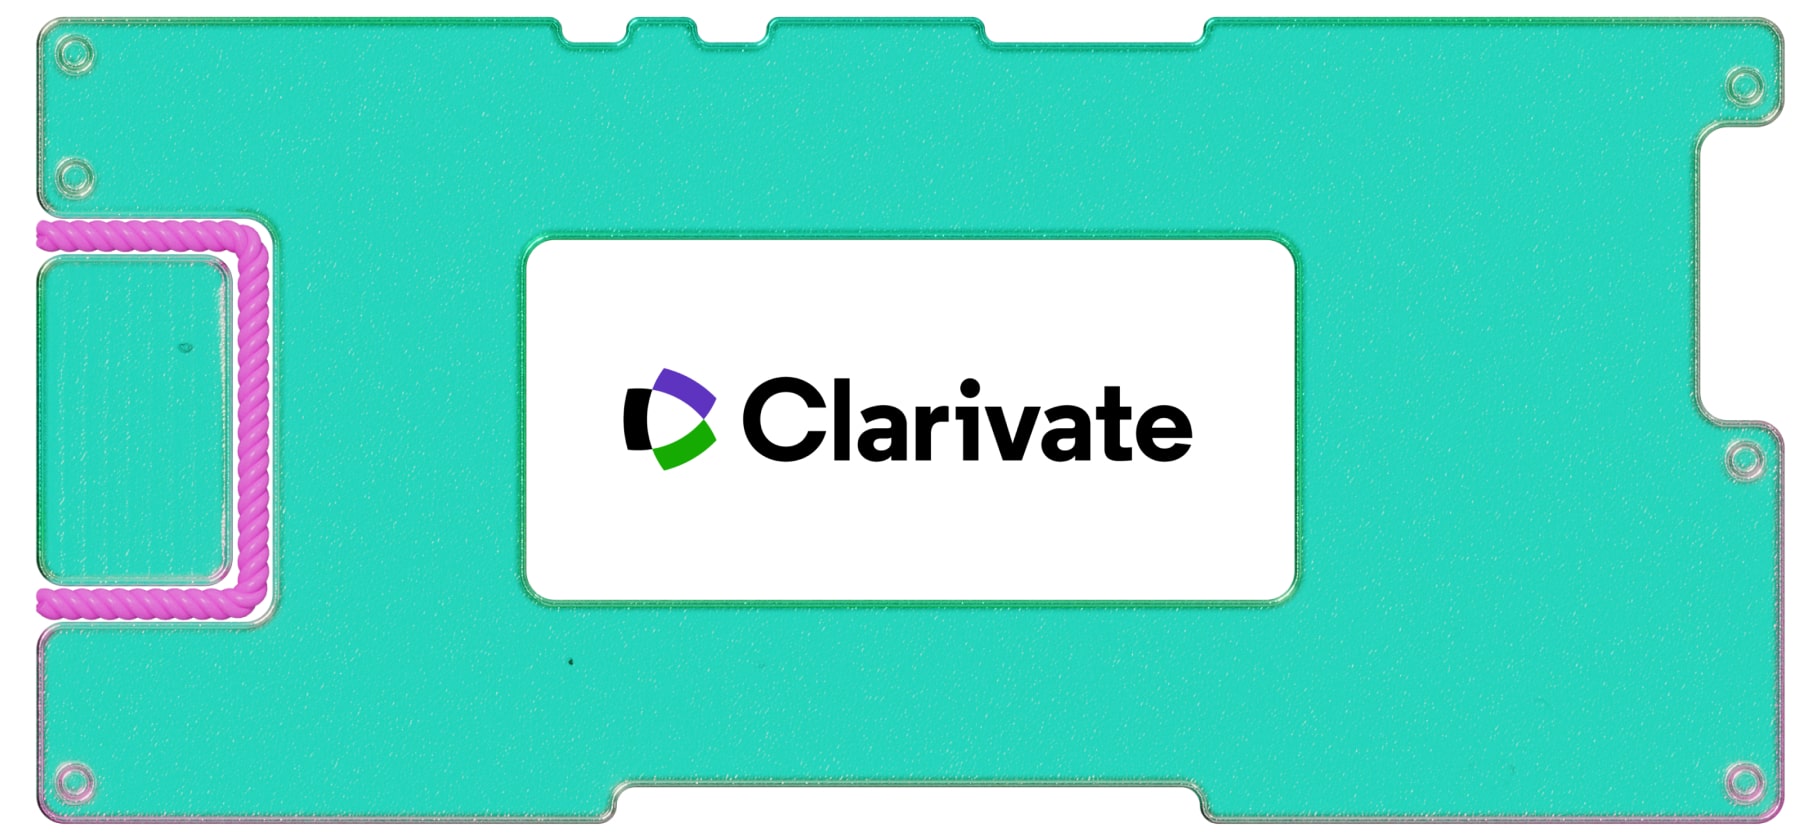 Инвестидея: Clarivate, потому что надо уважать интеллектуальную собственность